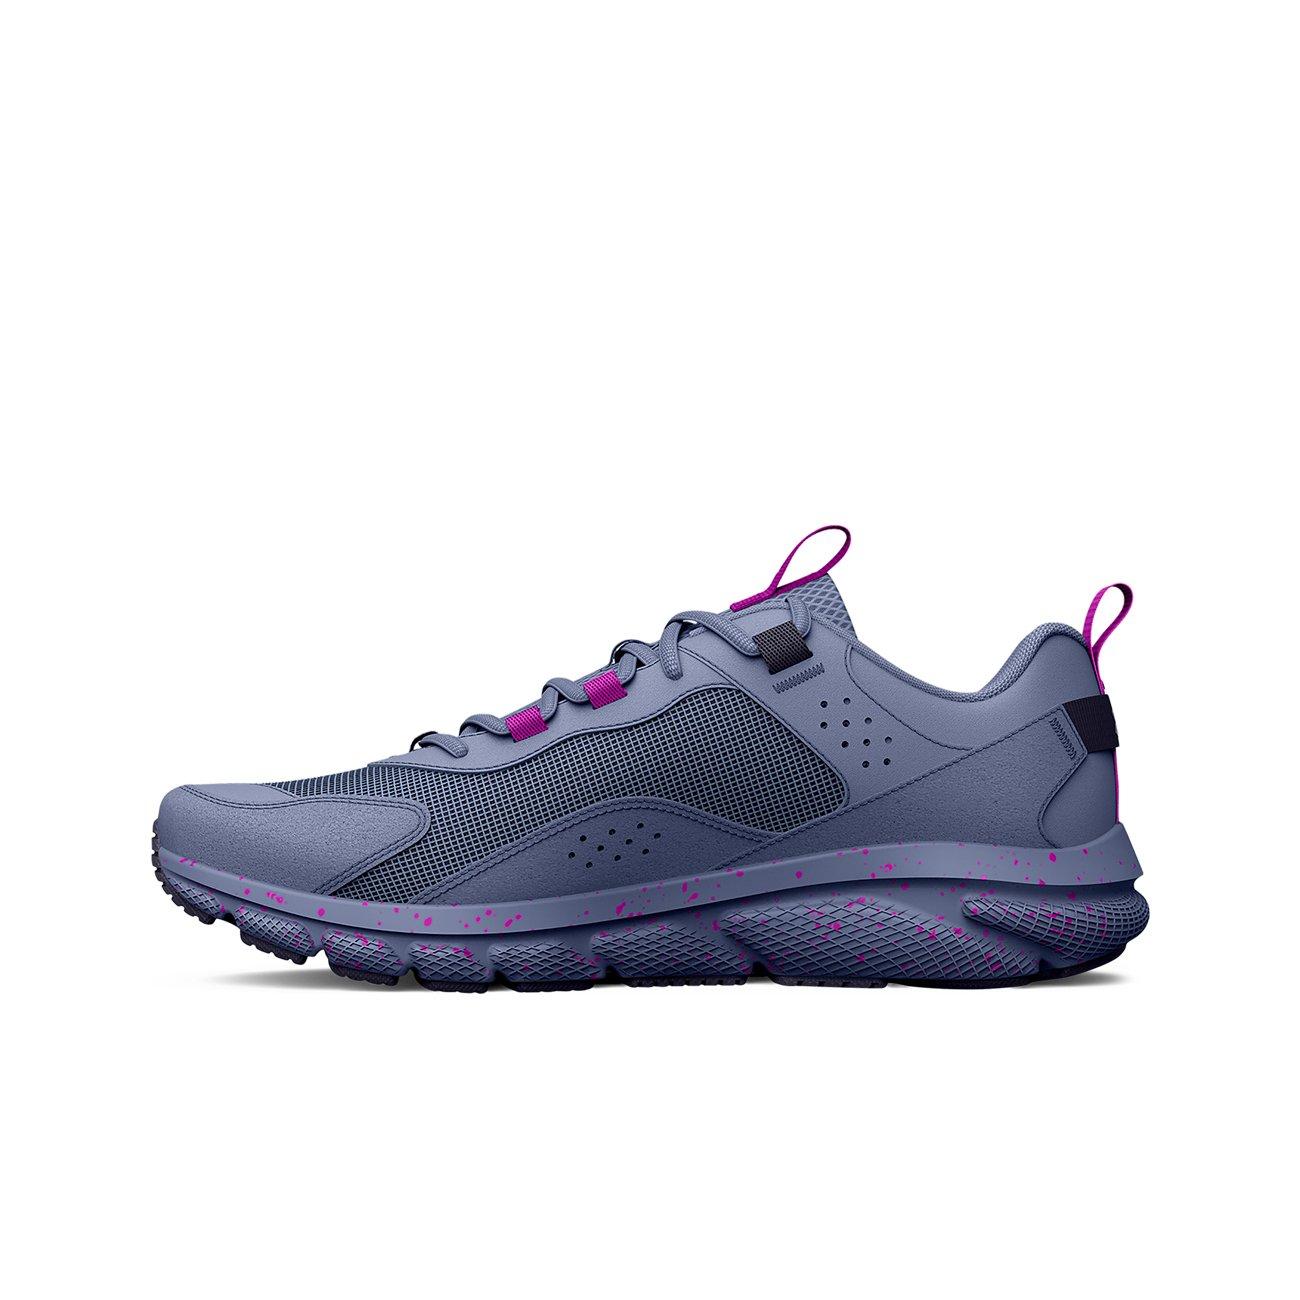 Under Armour Charged Verssert Speckle Aurora Purple/Strobe Women's  Running Shoe